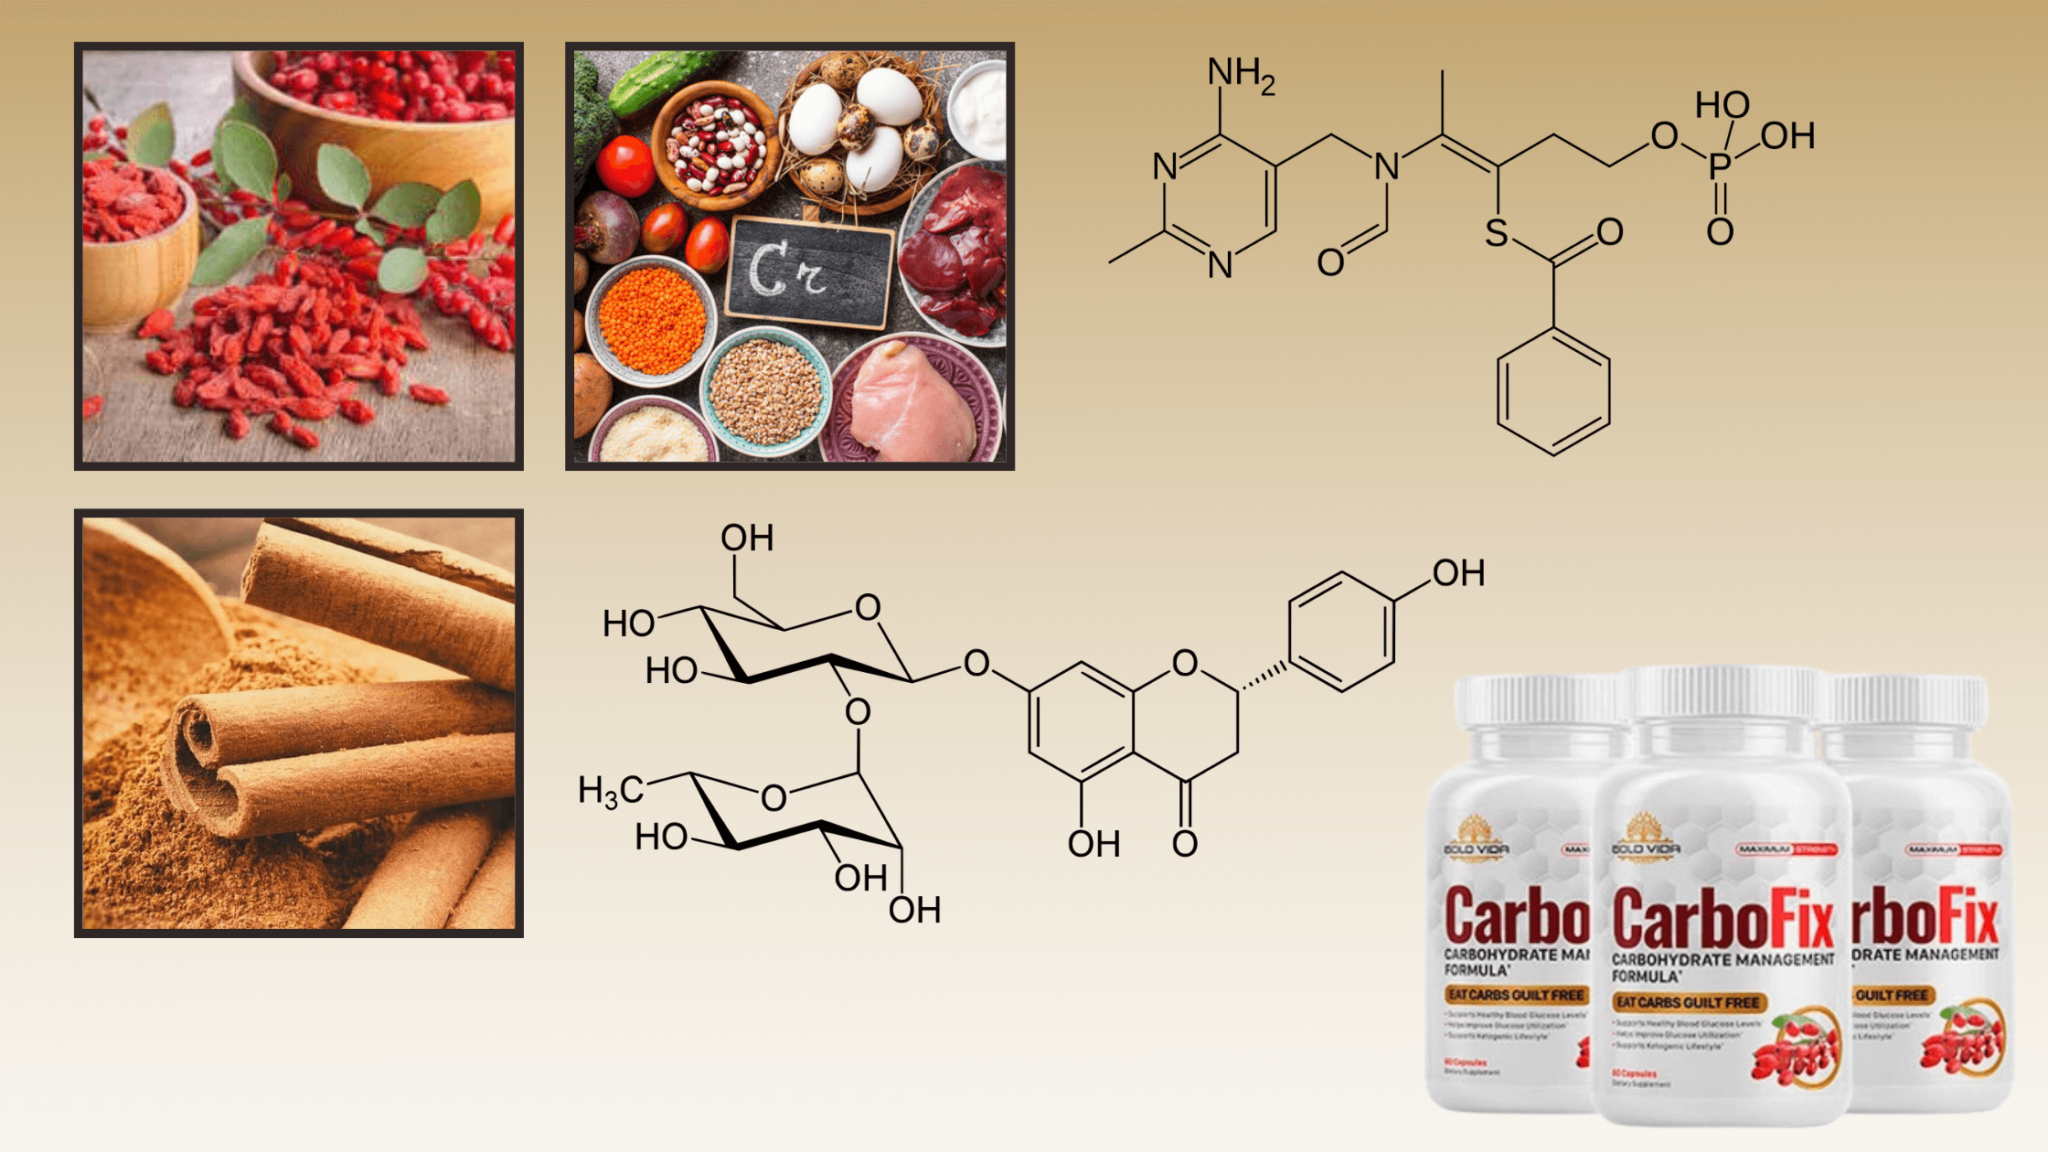 CarboFix Ingredients